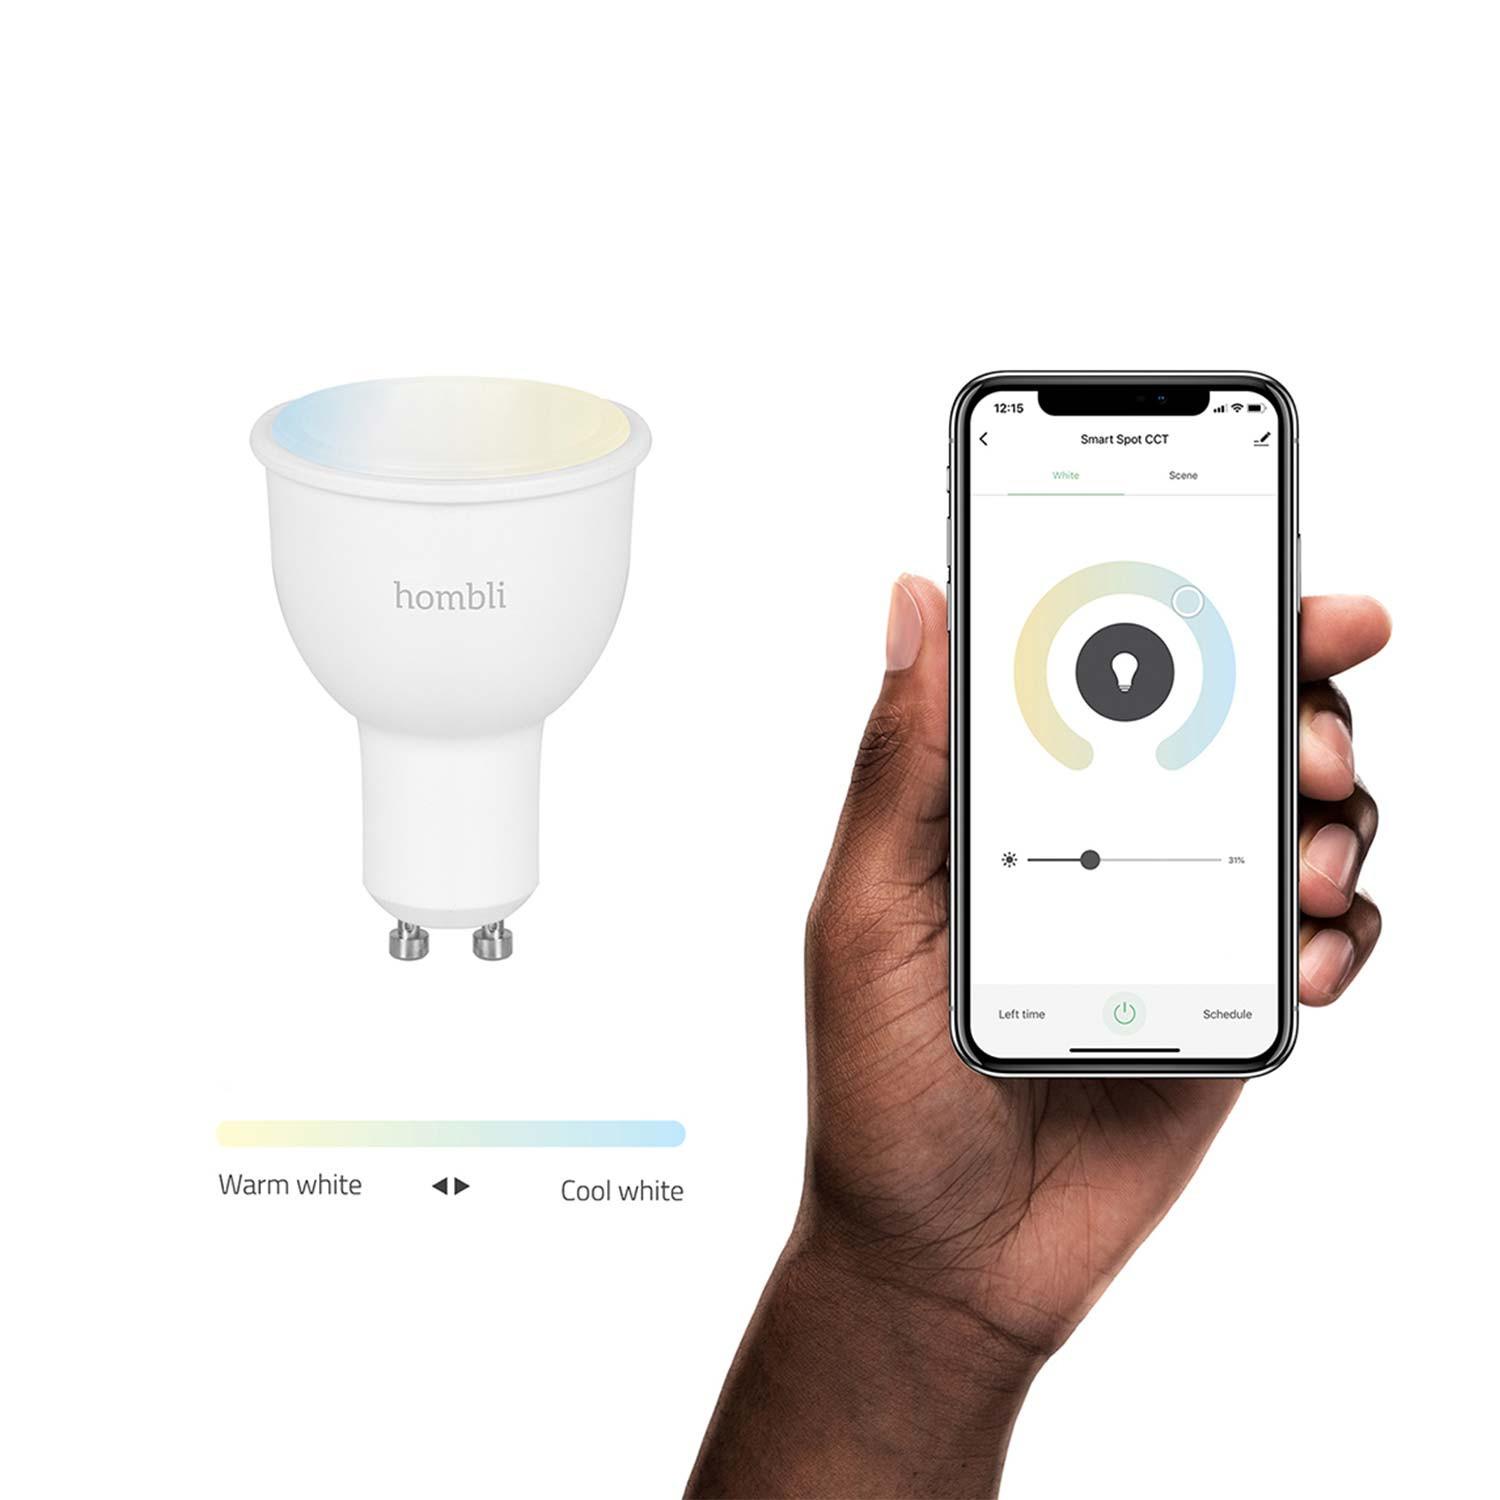 Hombli Smart Spot GU10 White-Lampe 3er-Set + gratis Smart Spot GU10 White 3er-Set - App